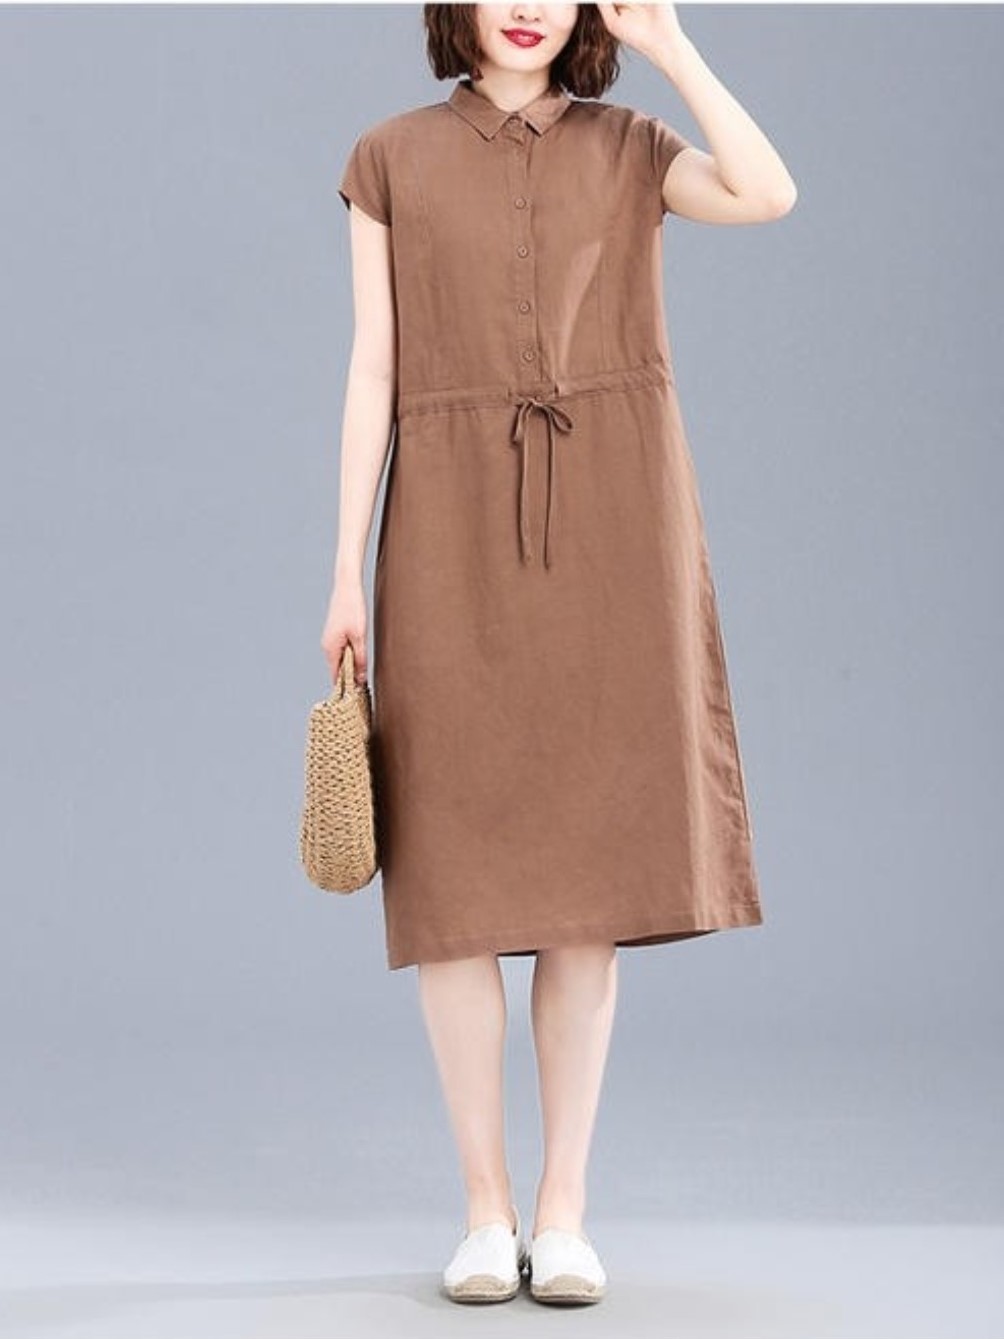 Đầm suông sơ mi tay hến chất linen mềm mát trẻ trung, thời trang phong cách công sở Đũi Việt